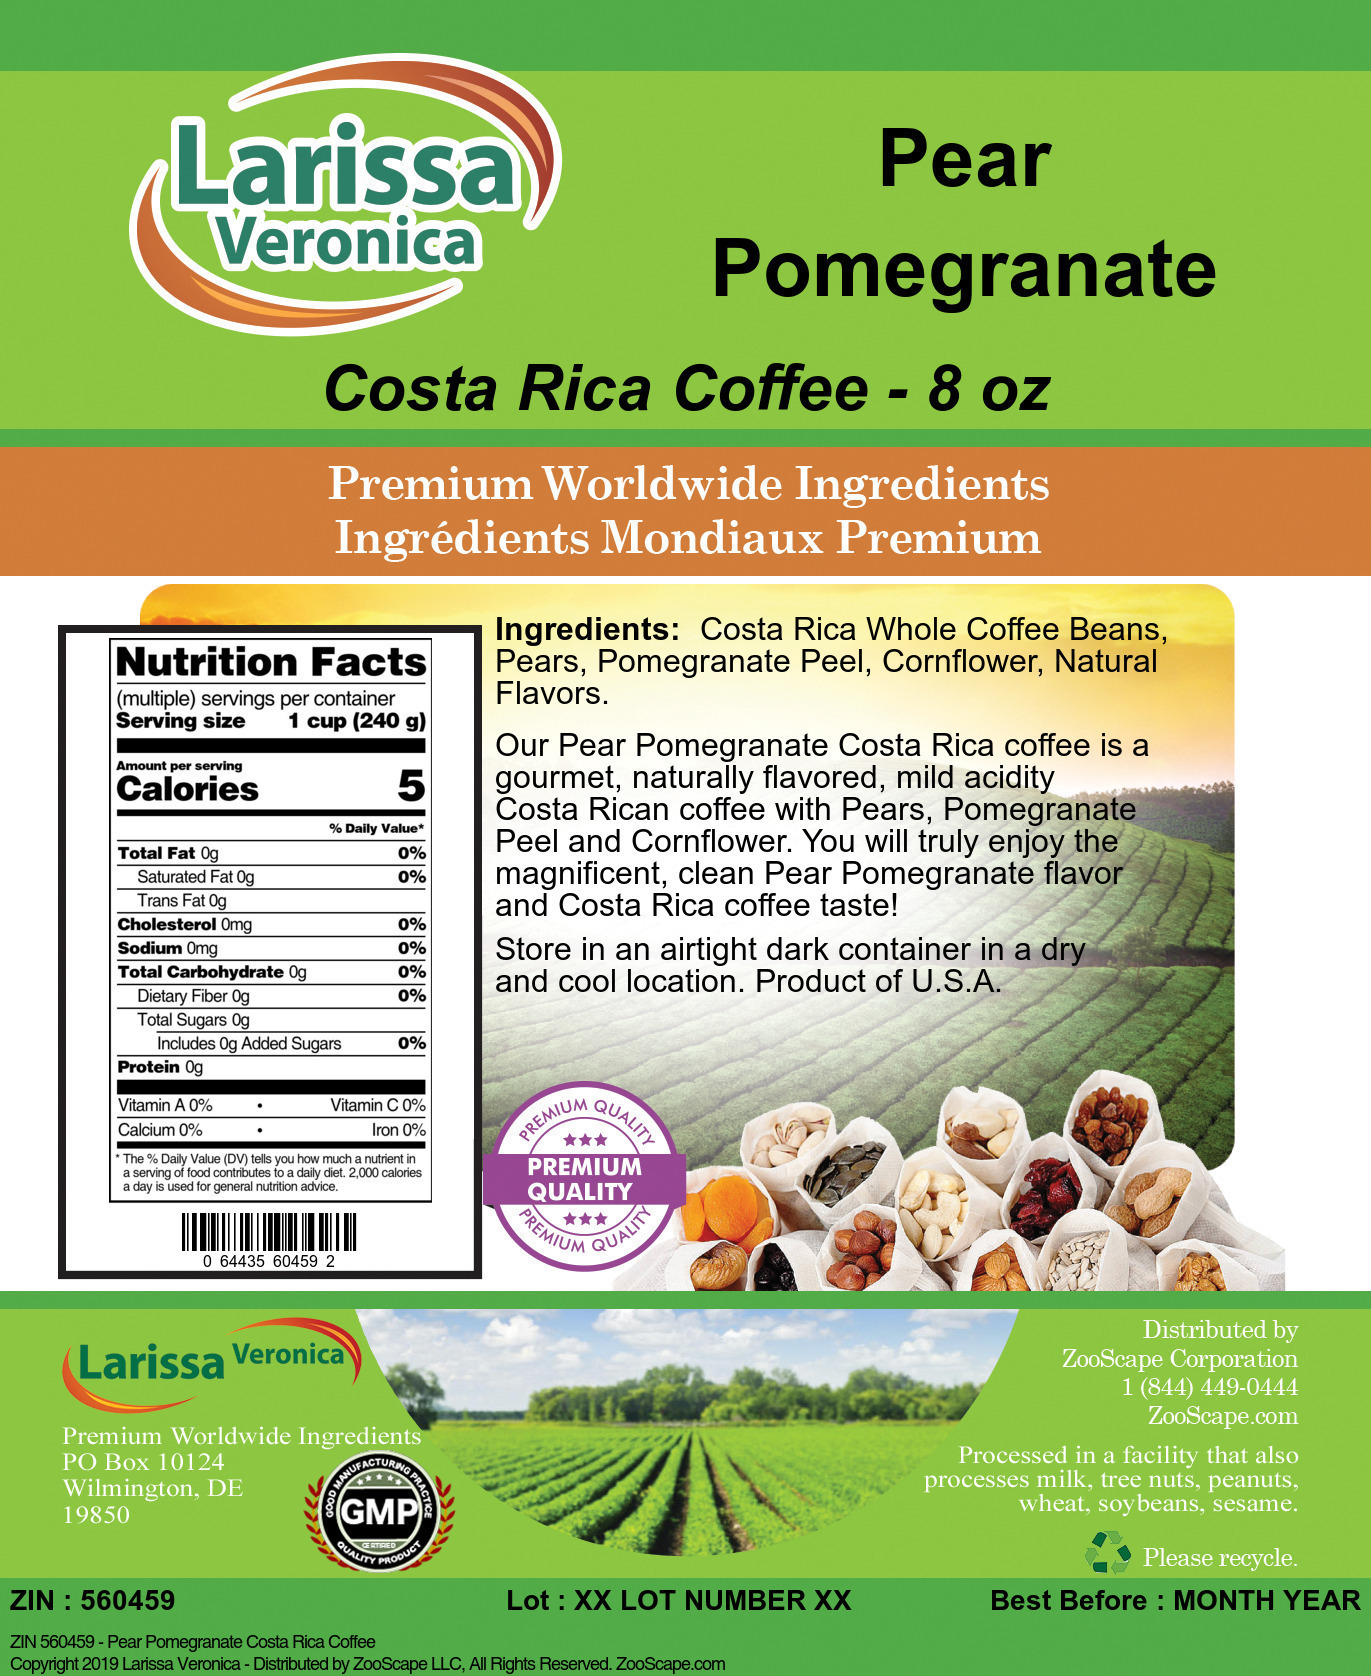 Pear Pomegranate Costa Rica Coffee - Label